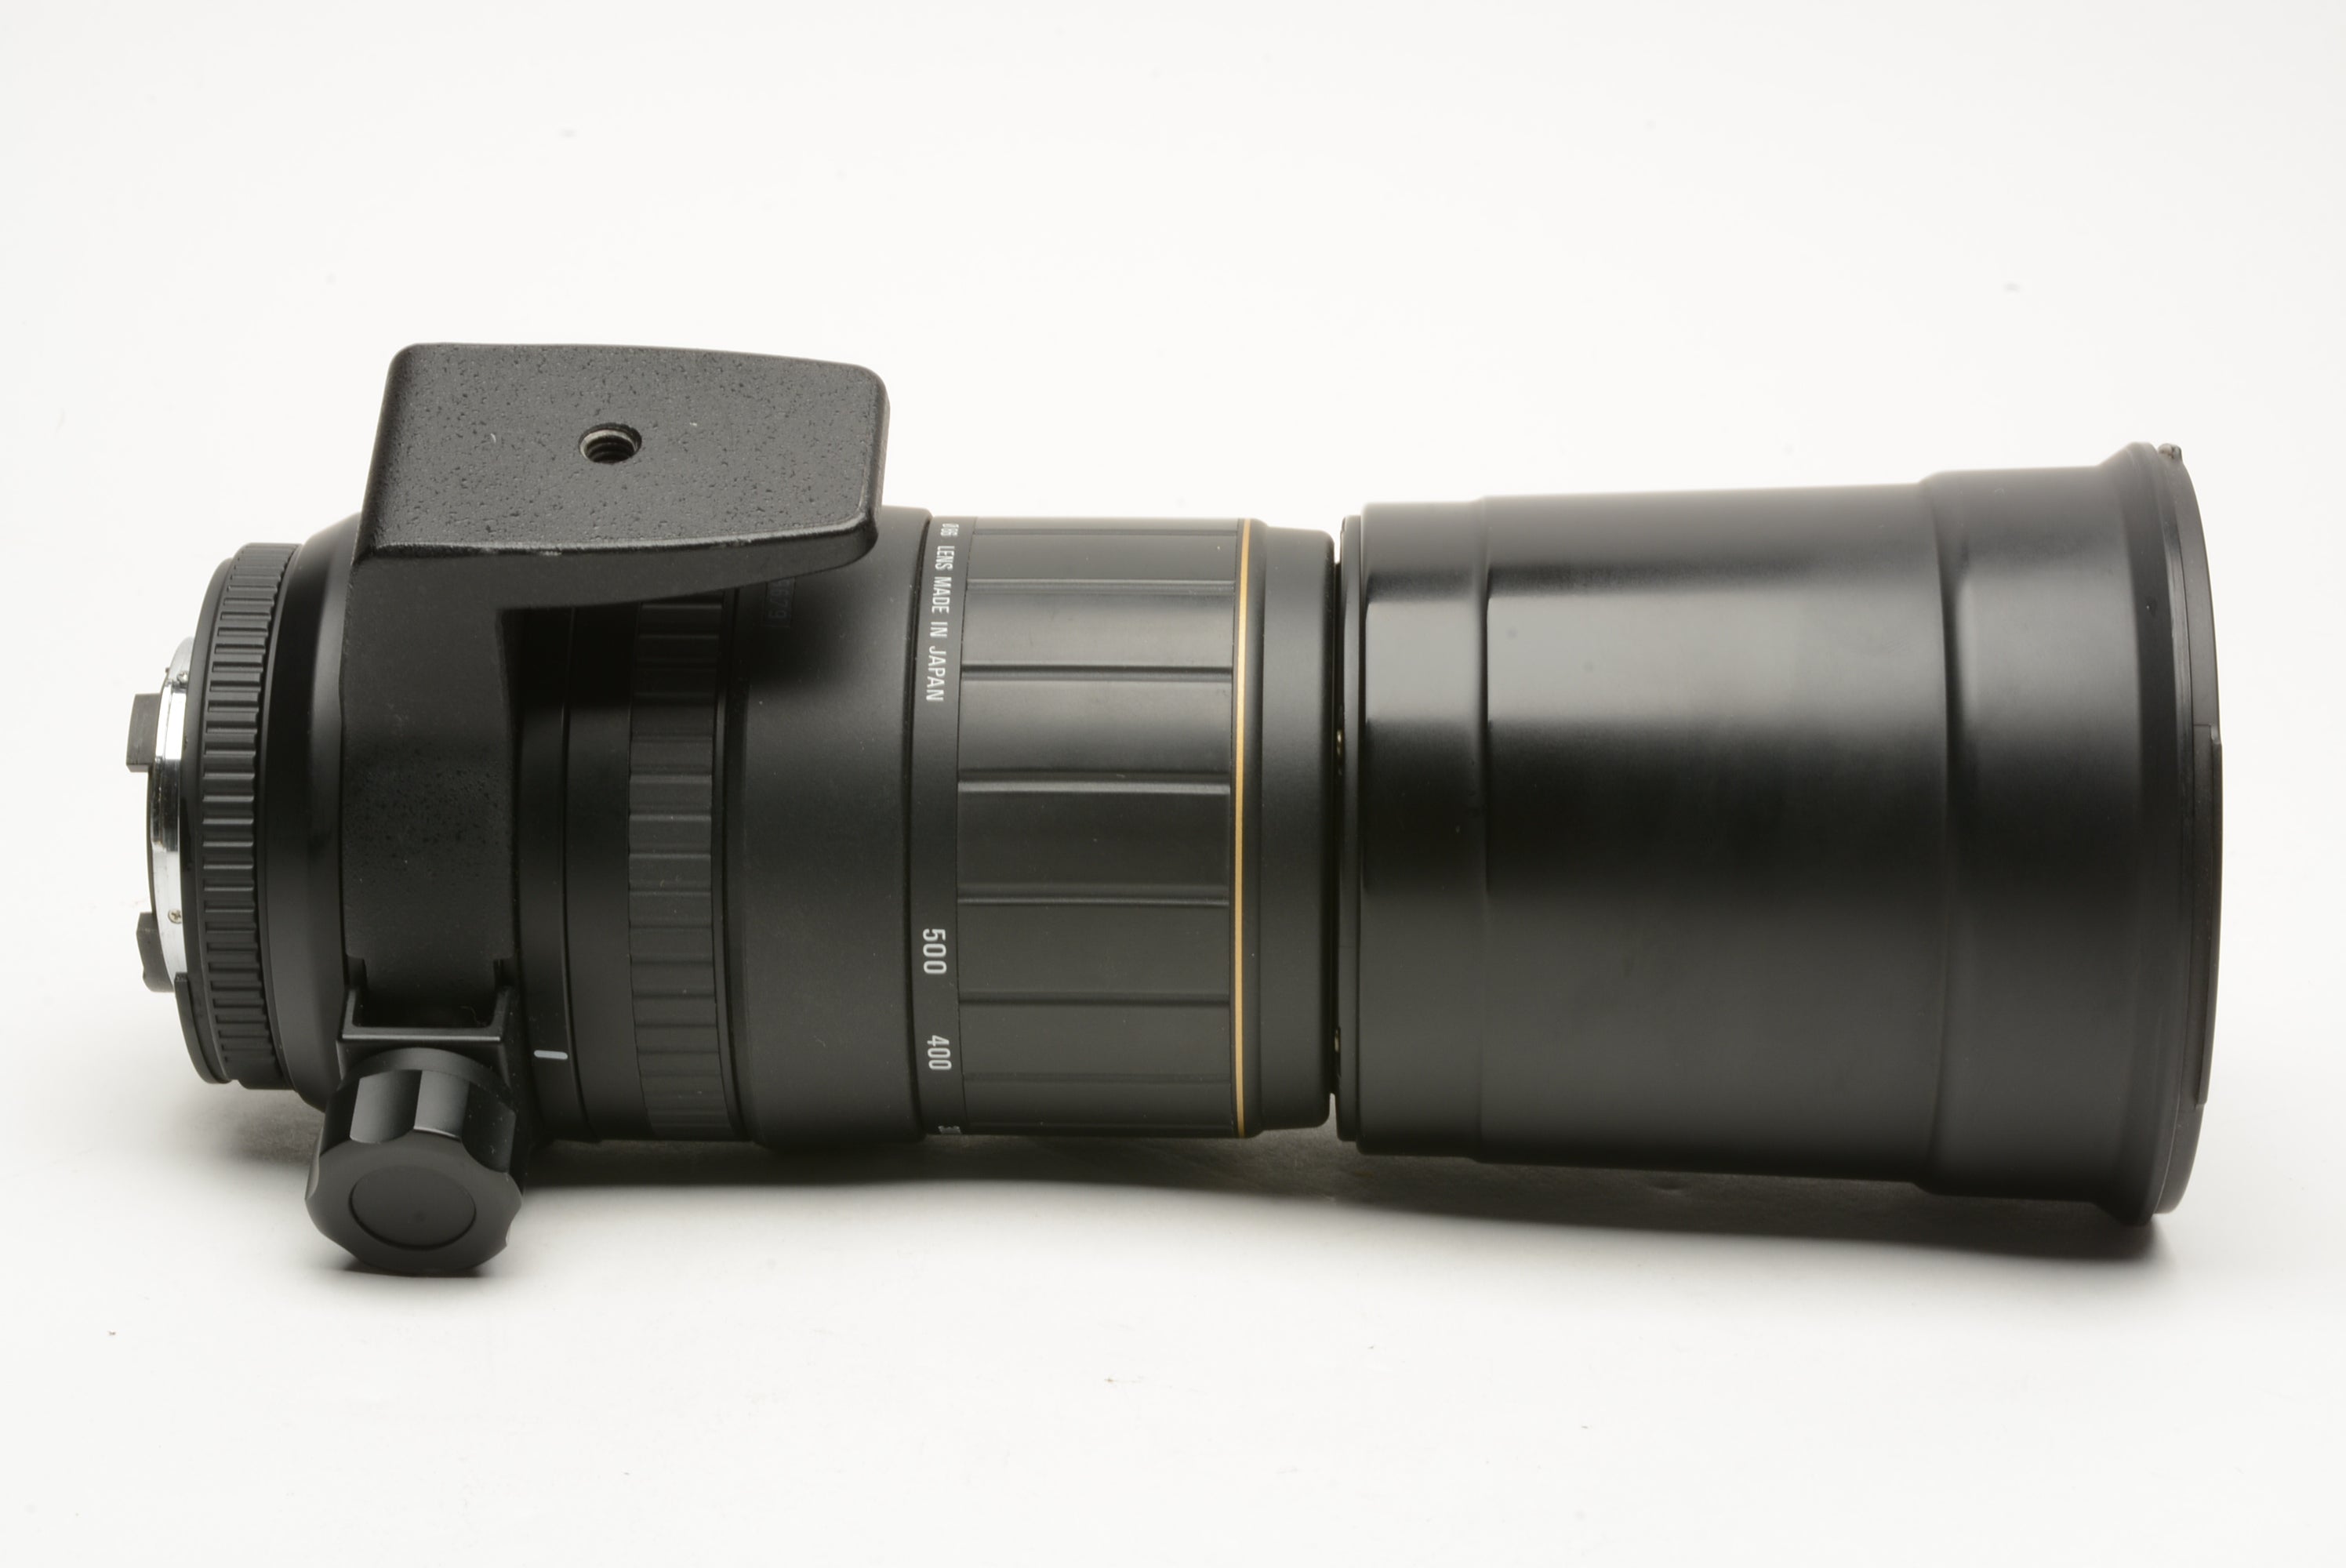 Sigma APO 170-500mm f/5-6.3 D w/hood, tripod collar, case, Nikon AF Mount